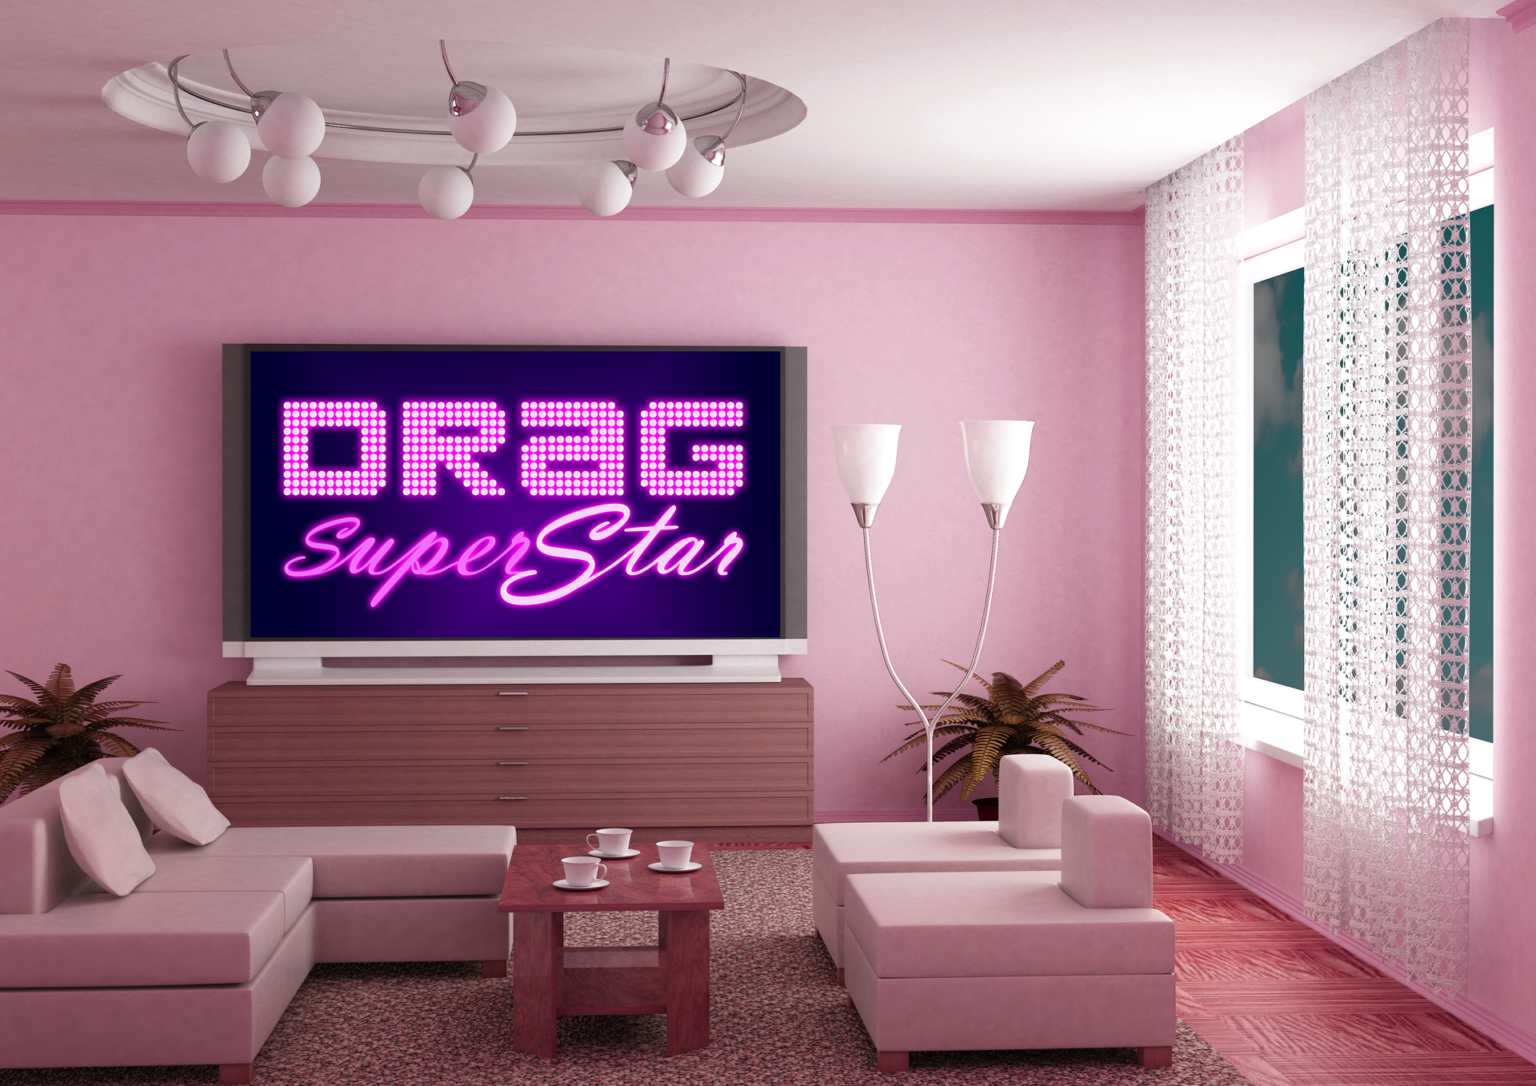 Drag-Superstar-8